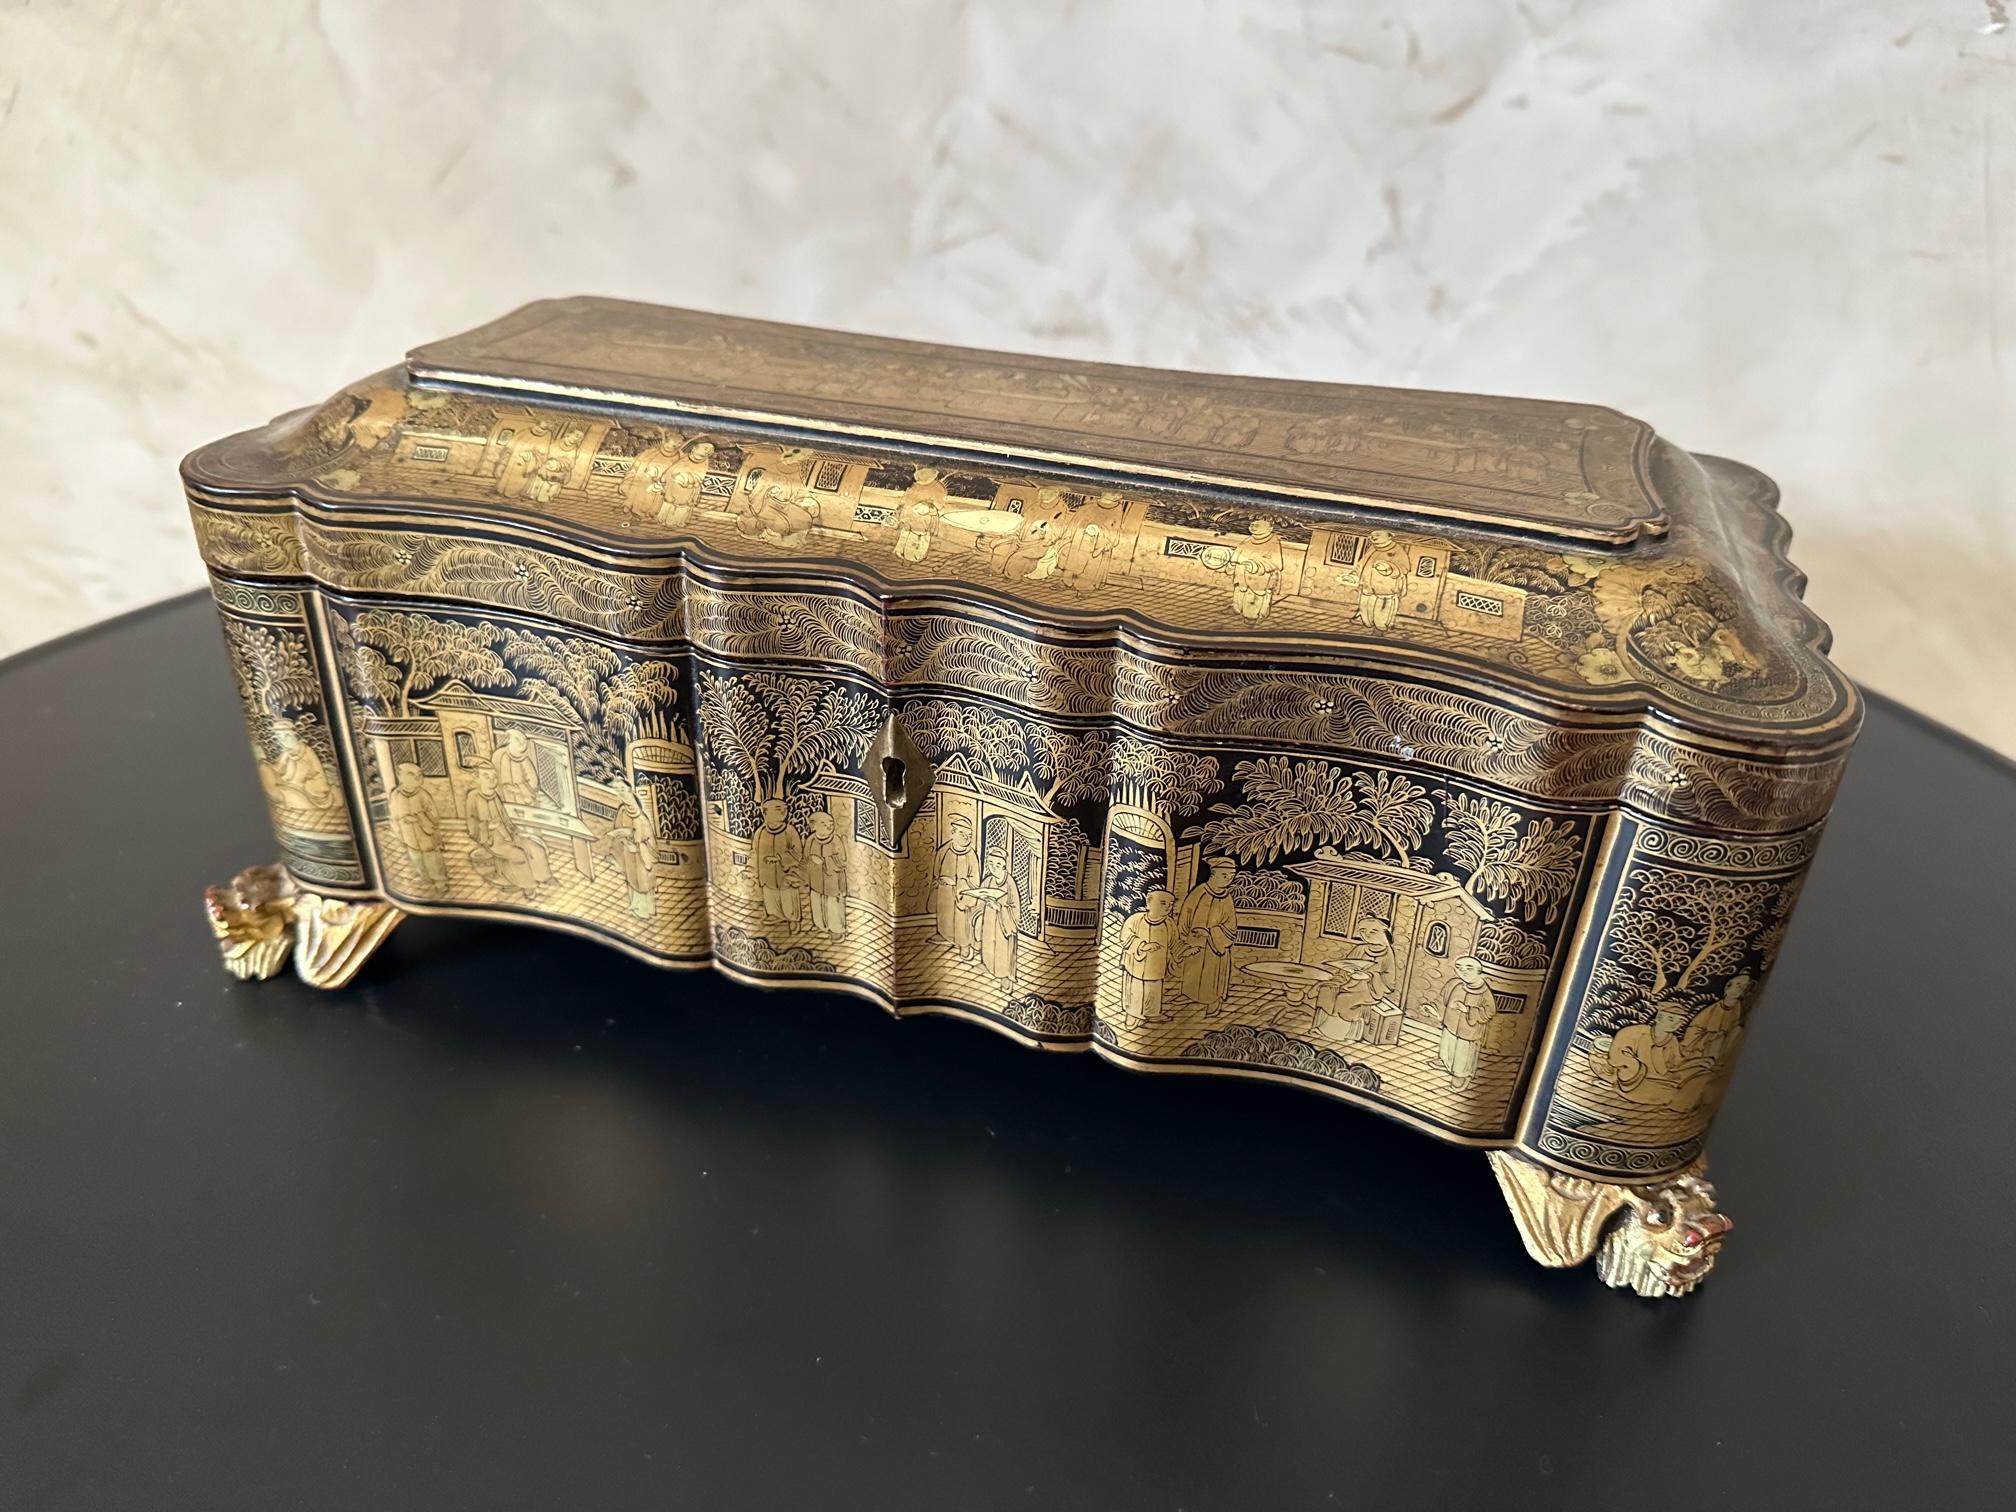 Prächtige Box Napoleon III in lackiertem Holz und Gold mit Vorspeisen oder Käse in Silber und Perlmutt Griff mit Monogramm.
Punze des Goldschmiedemeisters Touron in Paris, Garantiepunze, Altmeisterpunze von 1819-1838.
Die Schachtel besteht aus 12